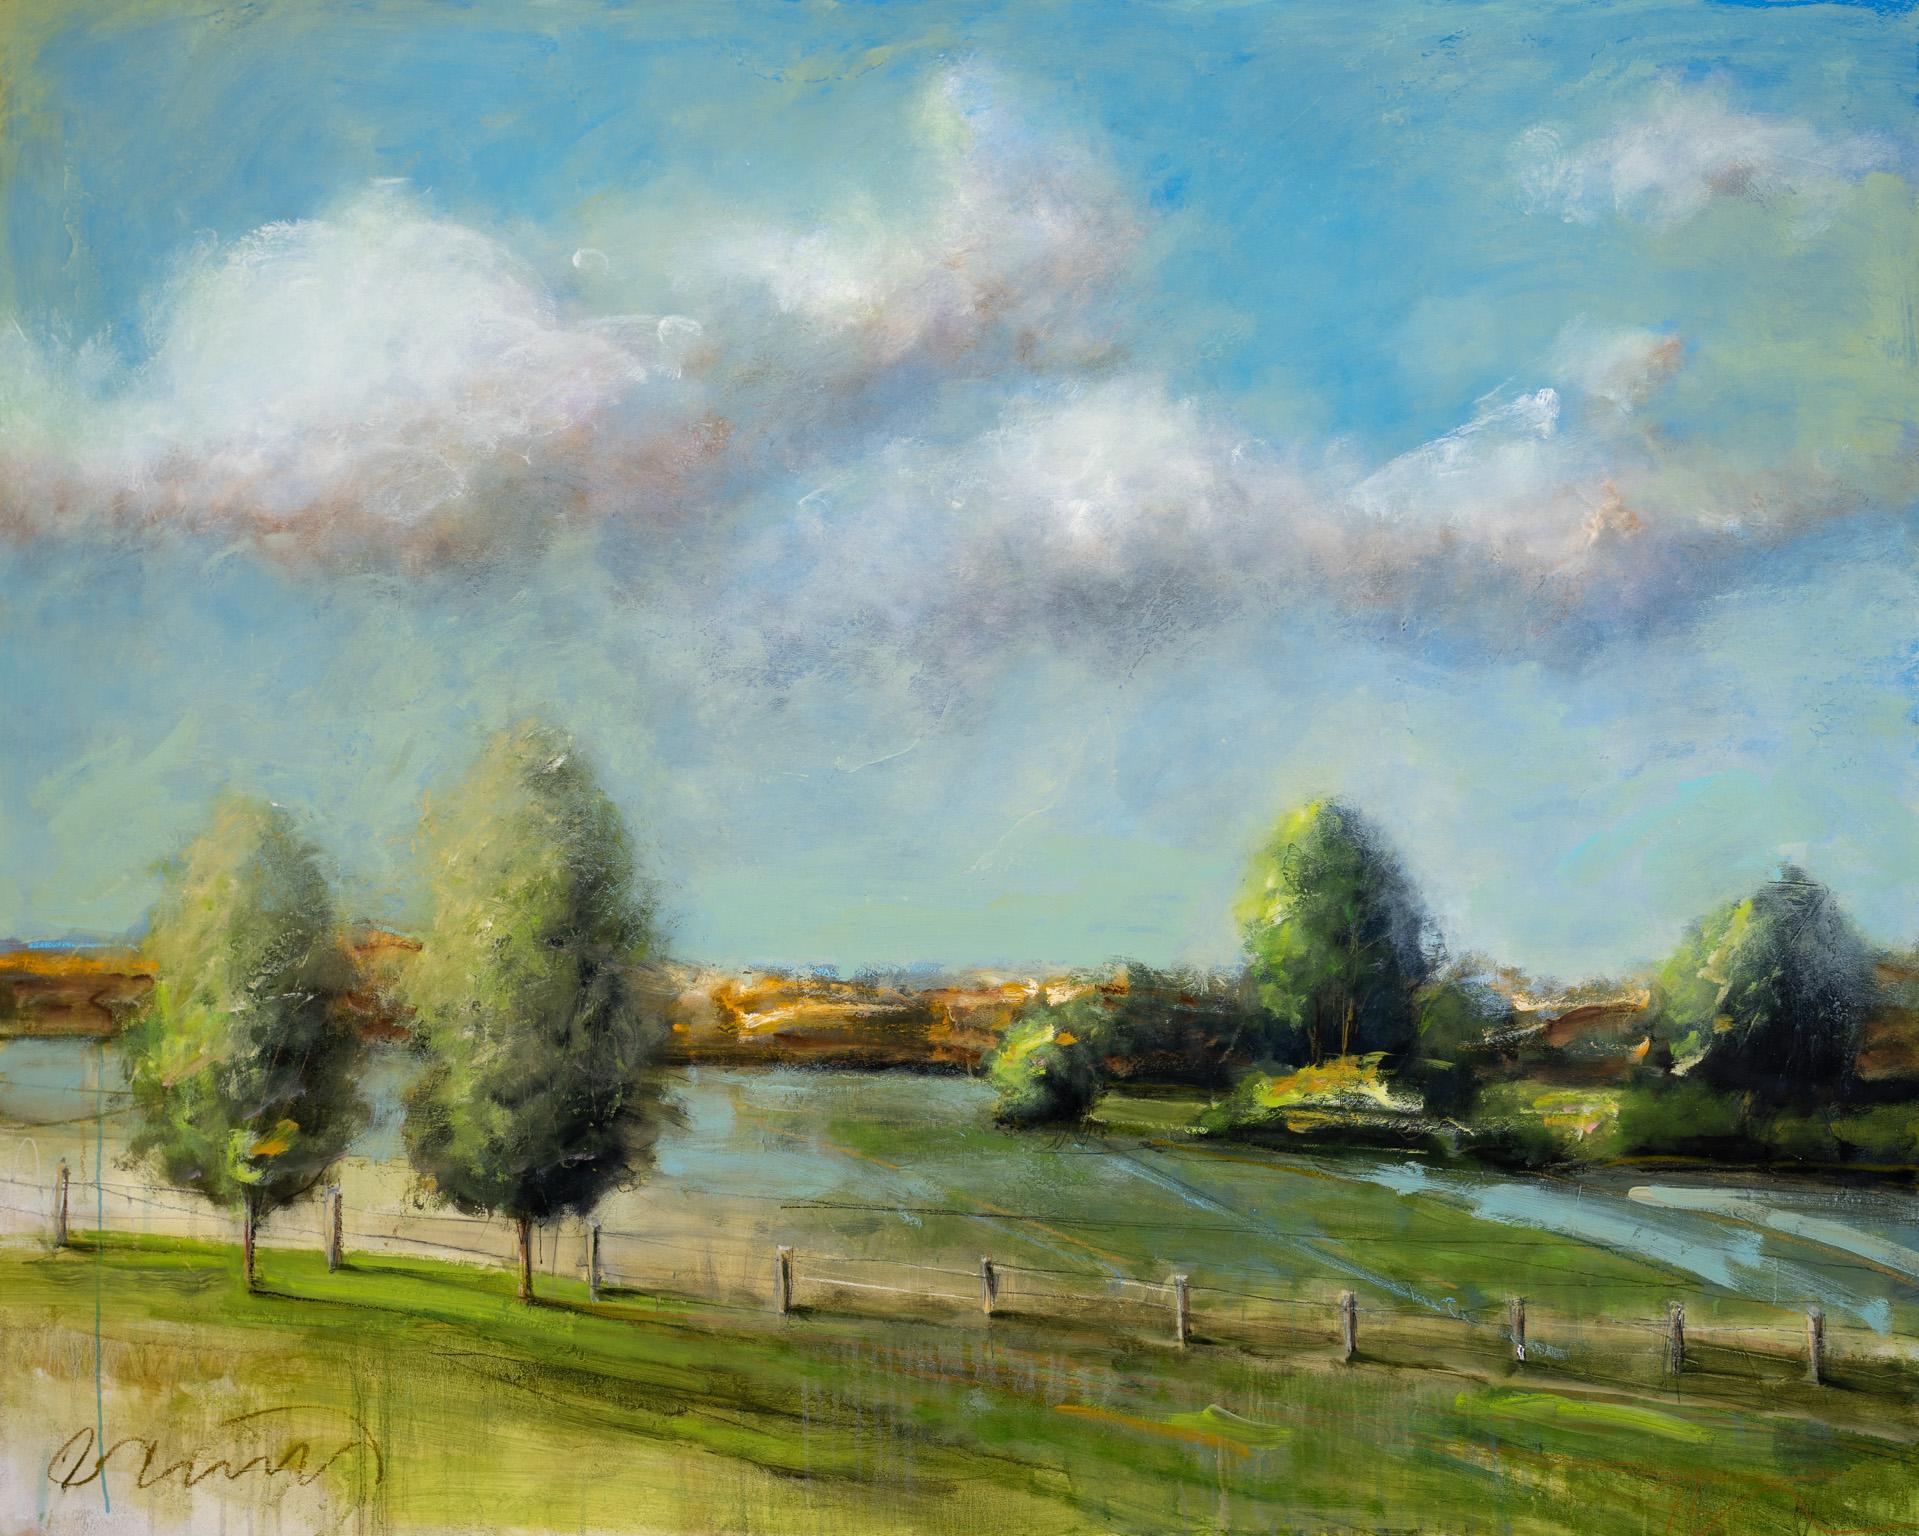 Landscape Art Eric Abrecht - "Pasture" Paysage abstrait avec arbres, peinture à l'huile sur panneau